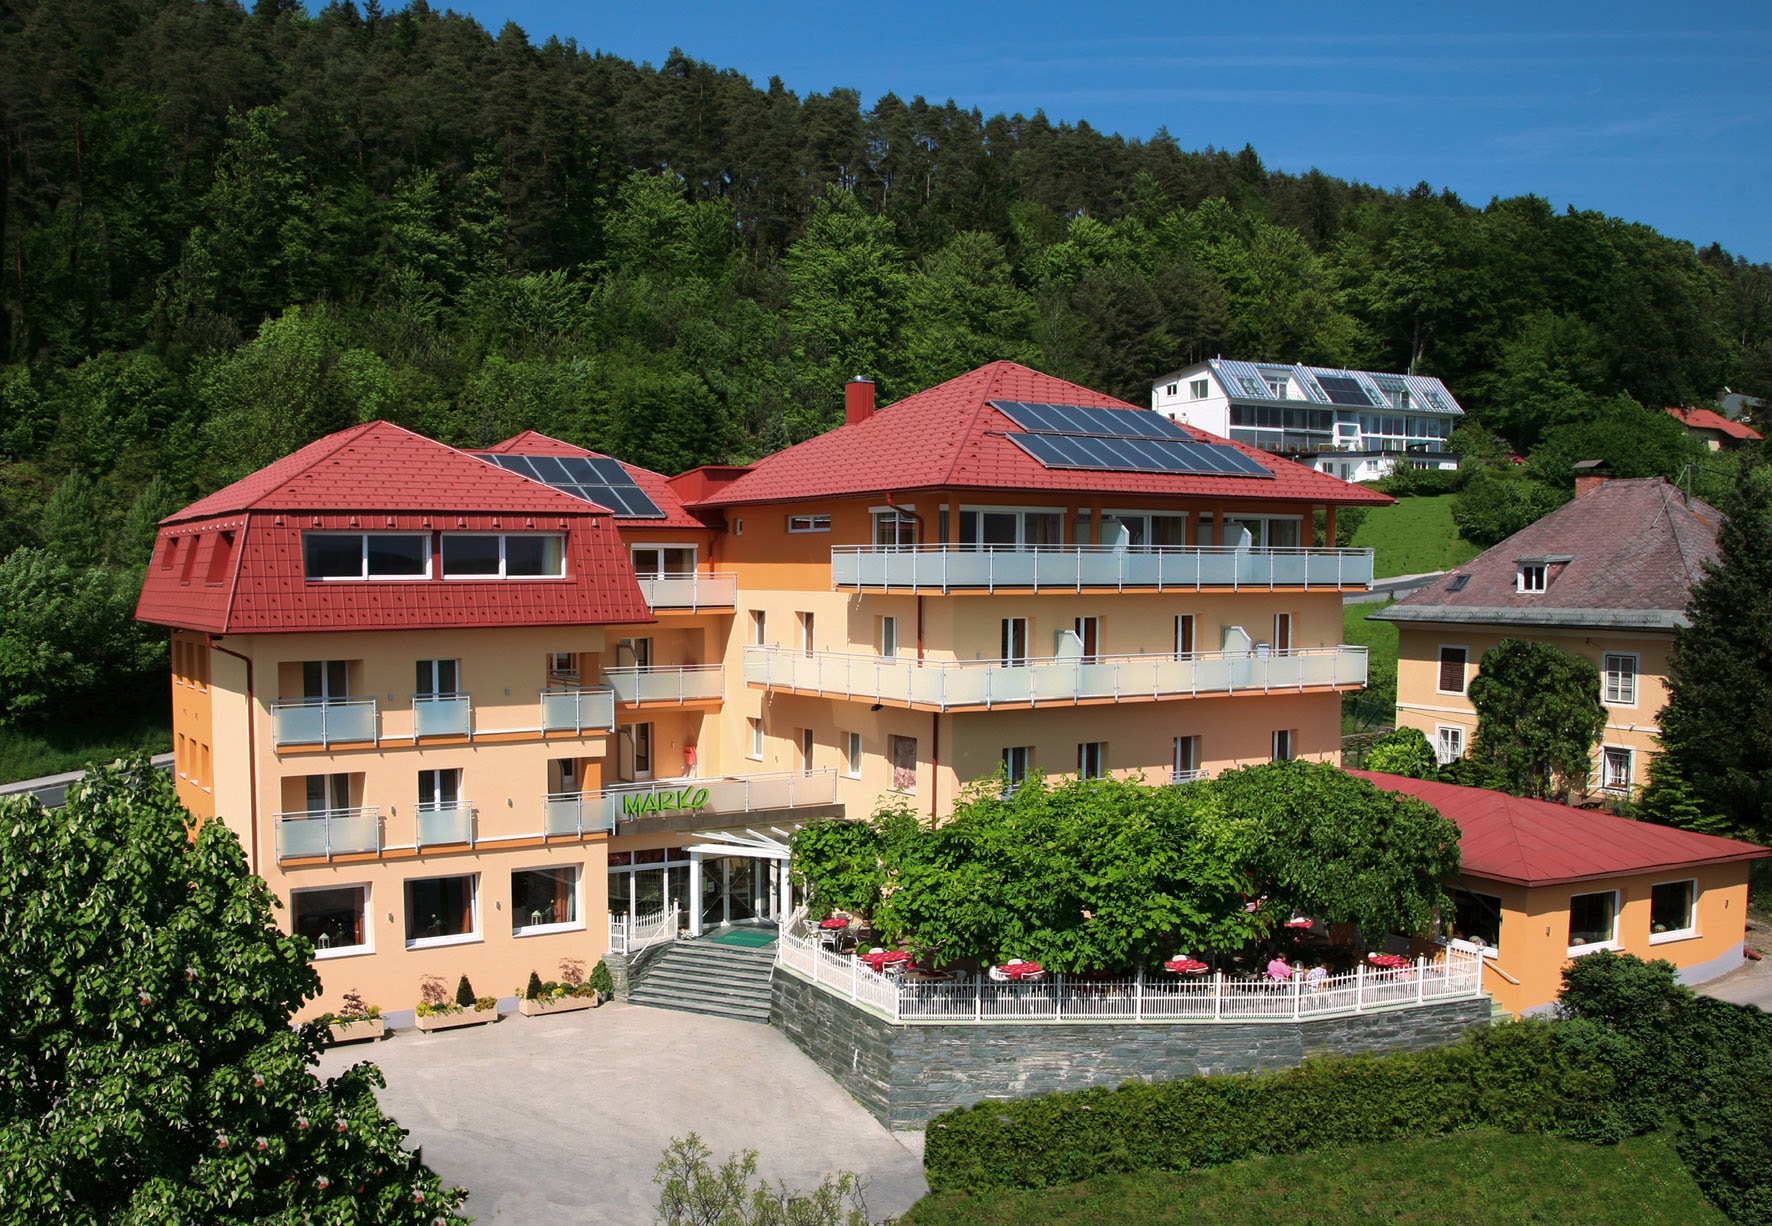 Schwechat 01 a | Alu-Rundrohr-Balkongeländer mit Mattglas bei Hotelanlage | Svoboda Metalltechnik